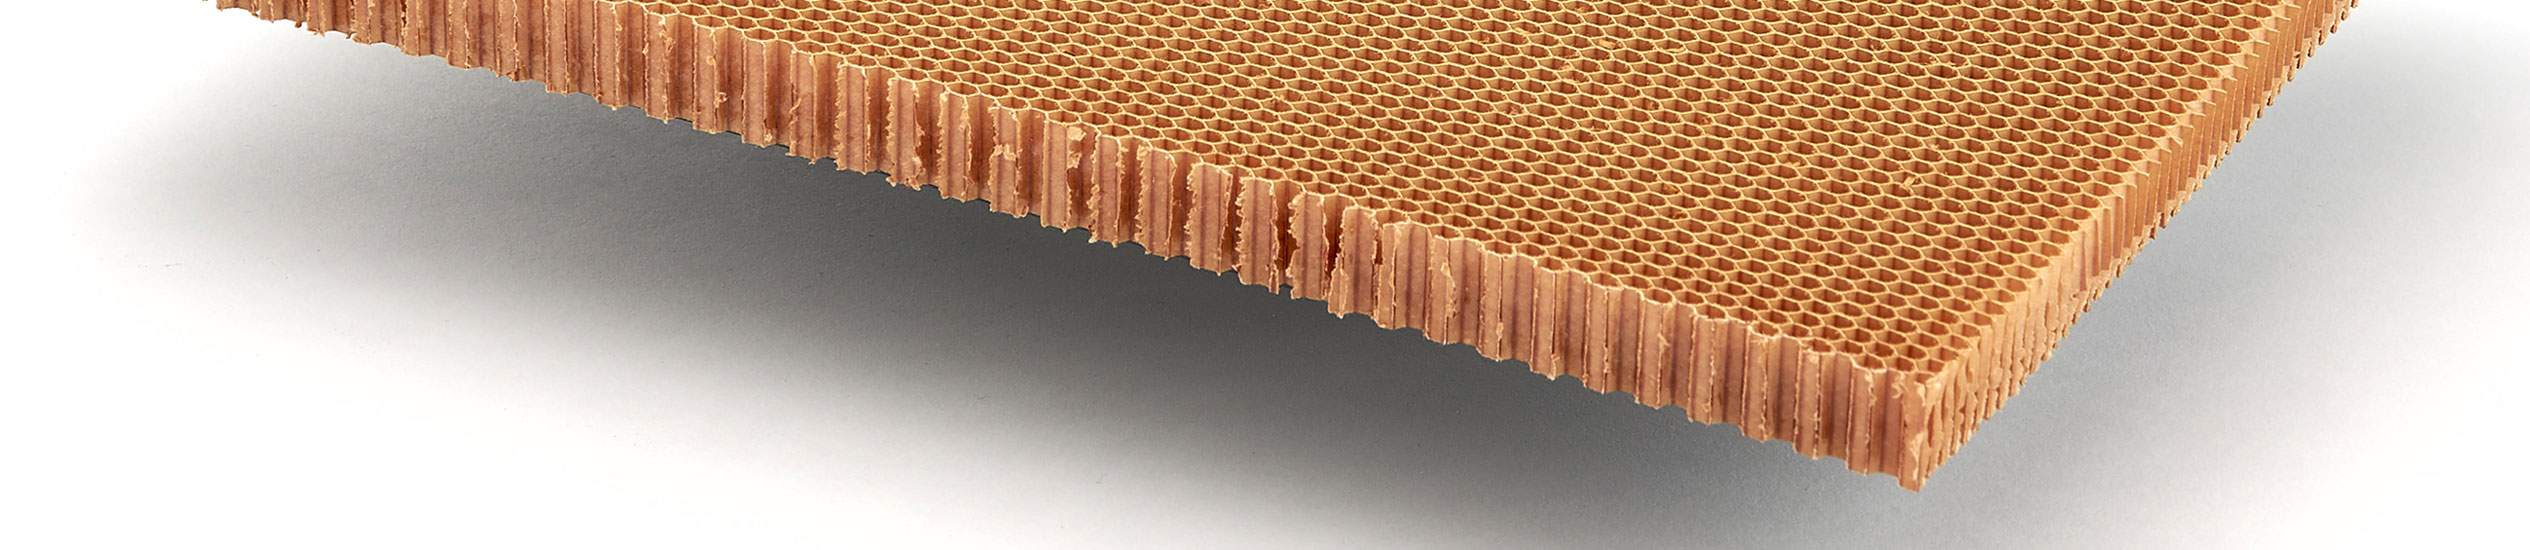 El nido de abeja en Nomex® no es un producto metálico, pero es muy ligero y resistente.